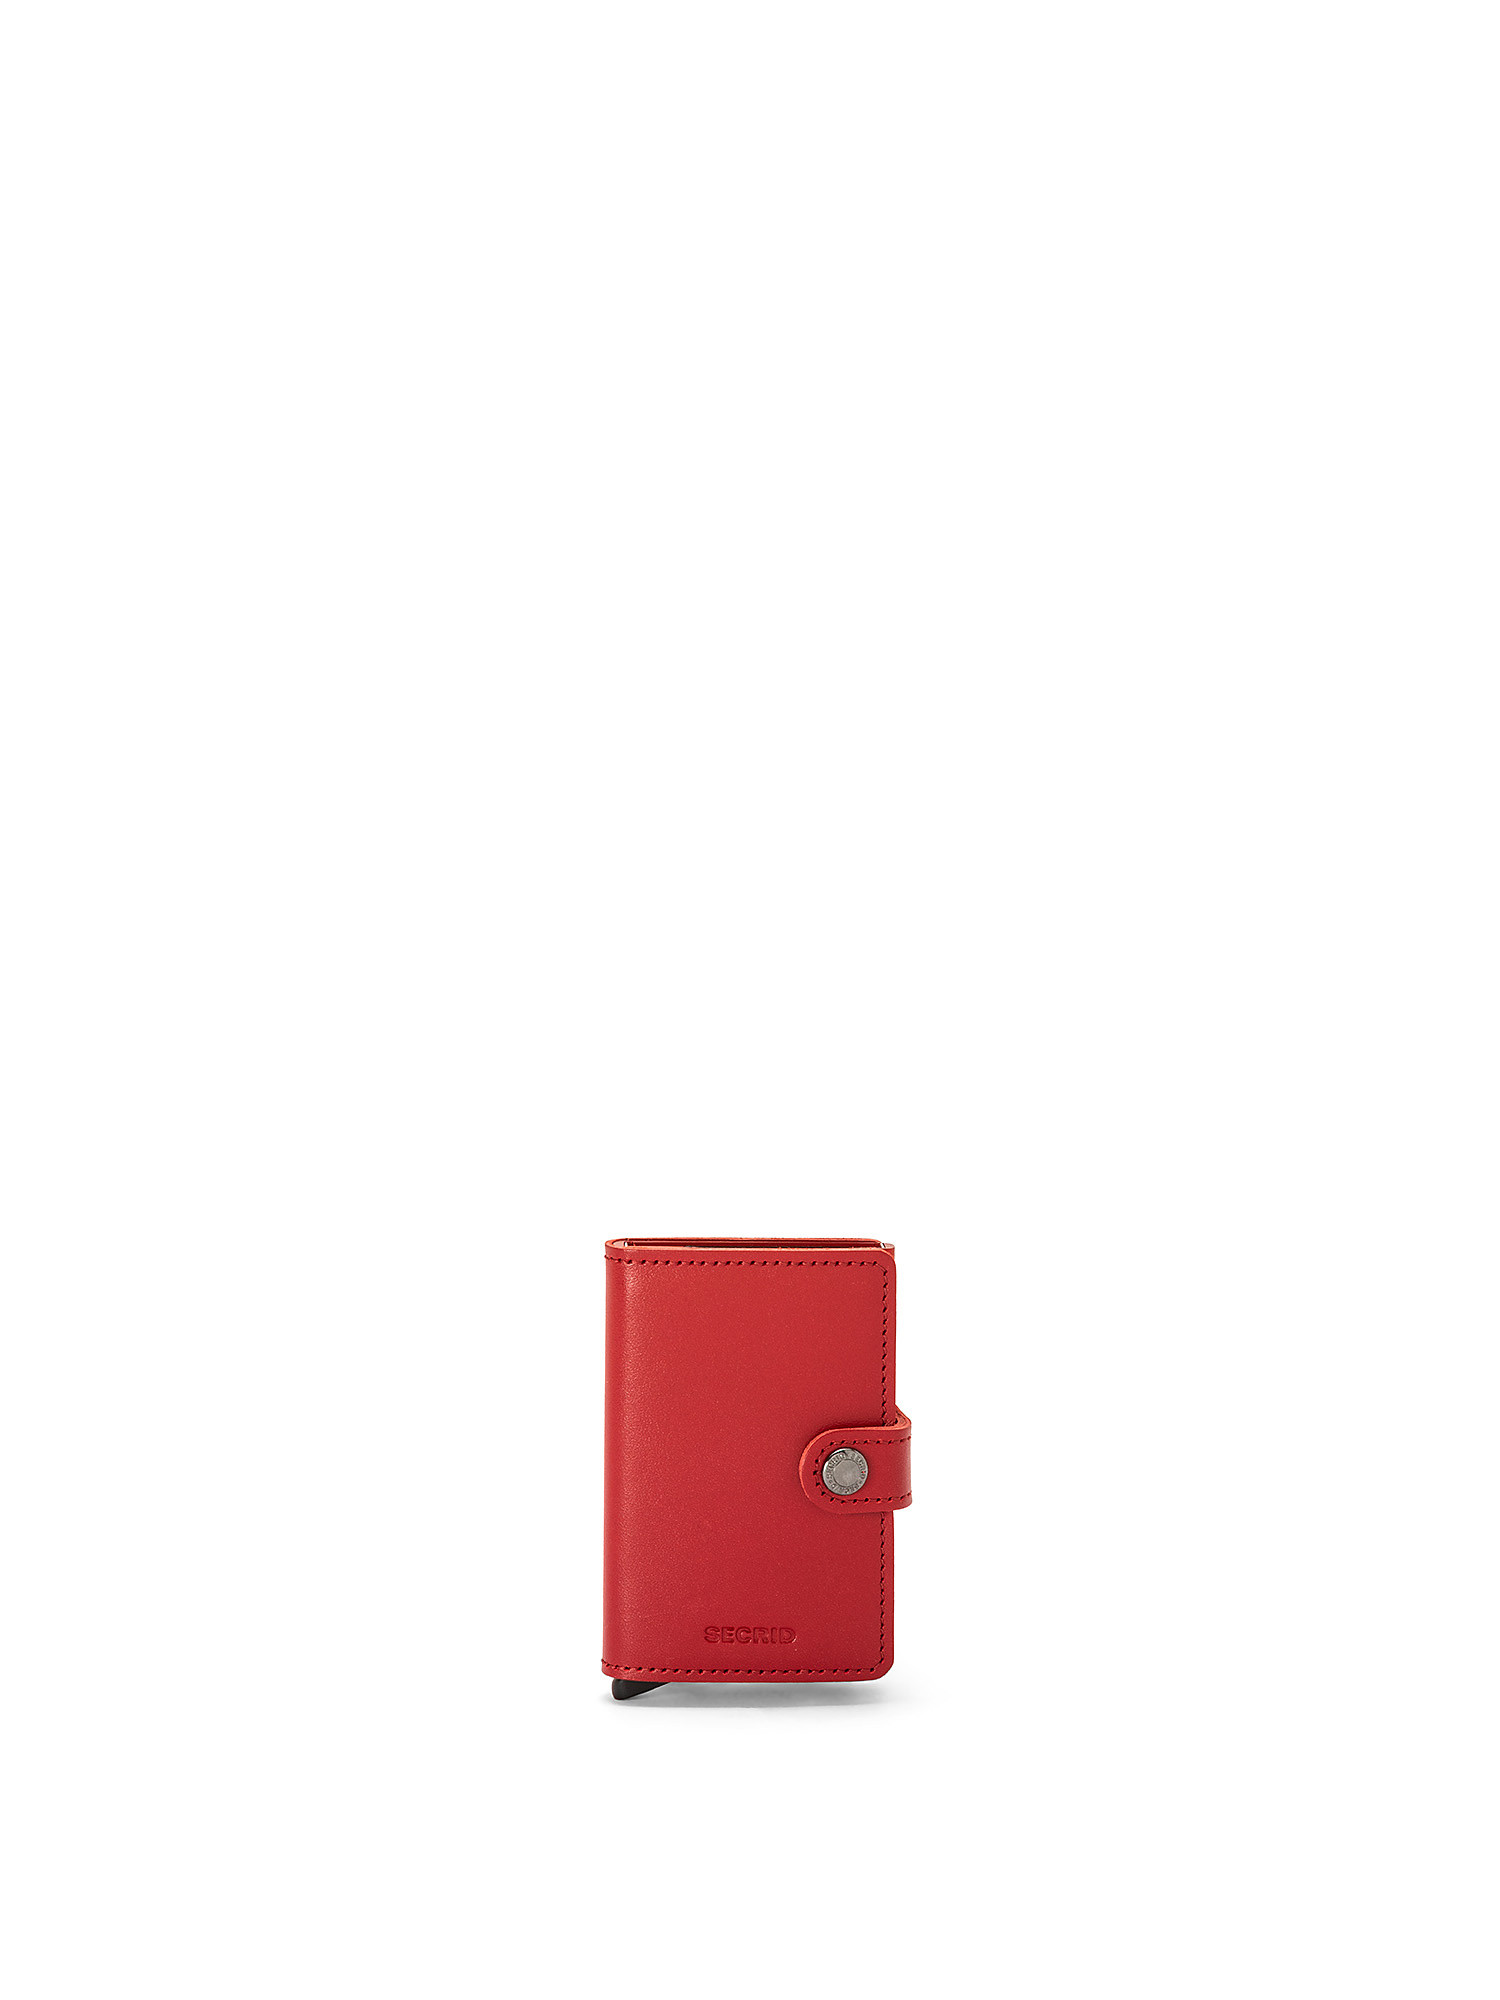 Portafoglio Miniwallet Original, Rosso, large